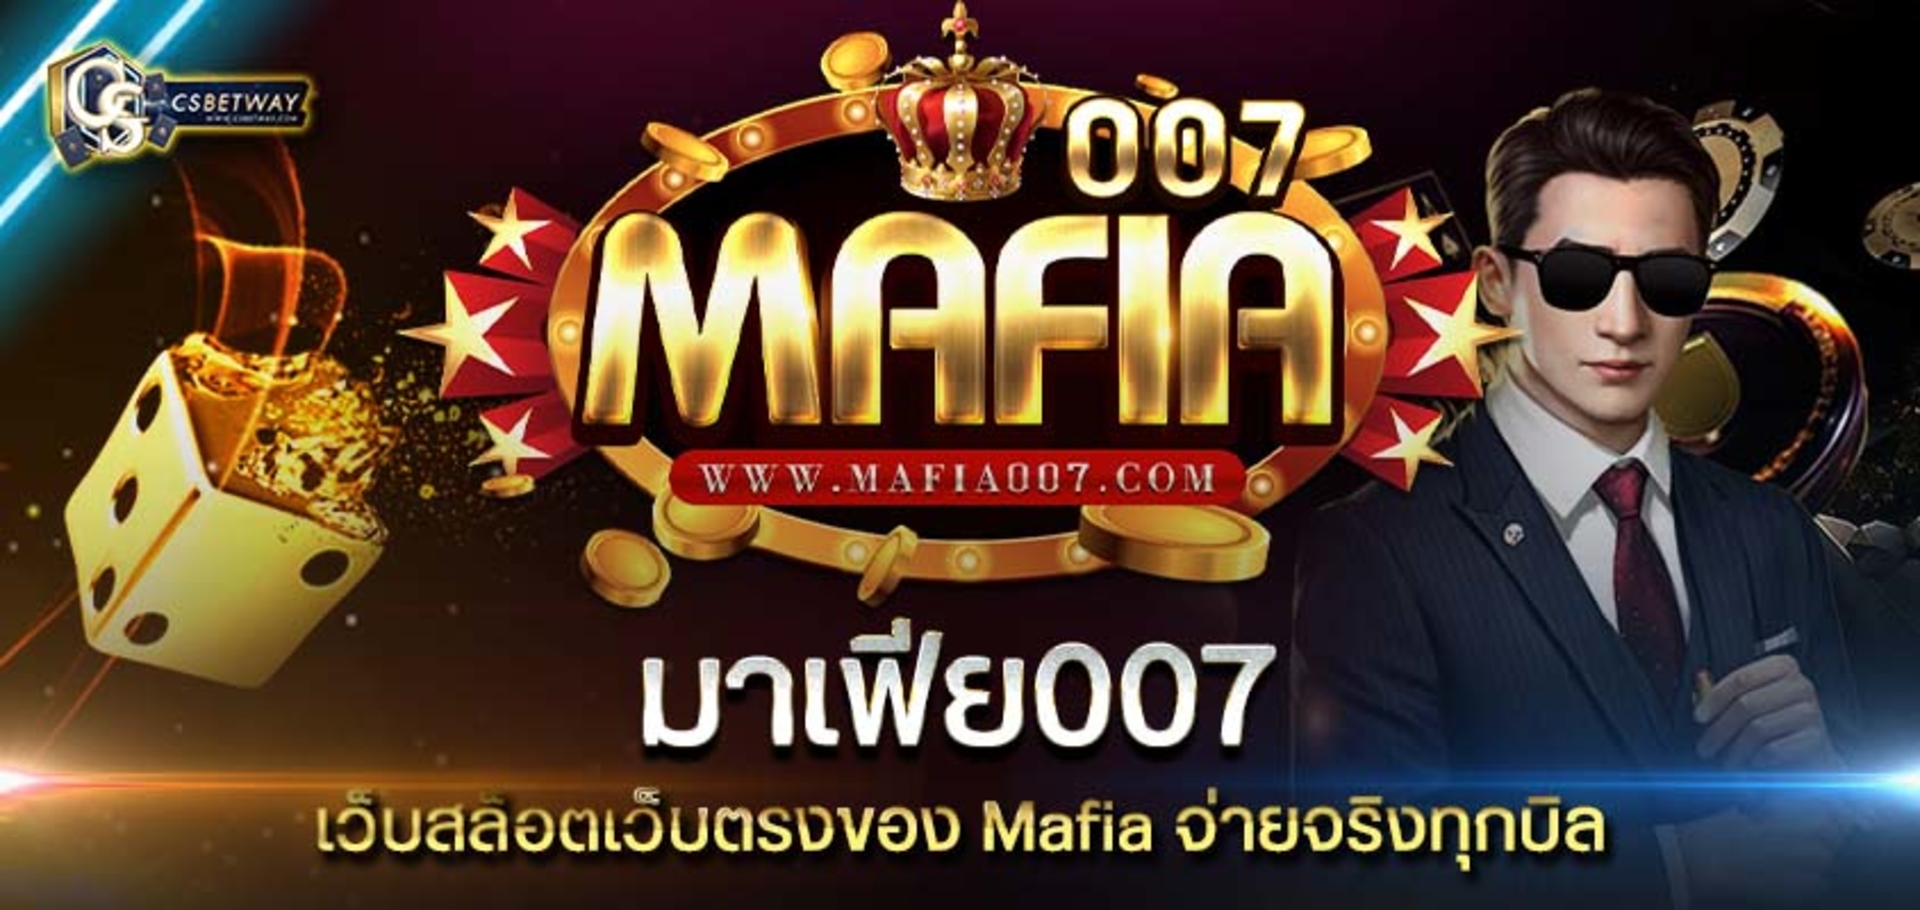 มาเฟีย007 เว็บสล็อตเว็บตรงของ Mafia จ่ายจริงทุกบิล สมัคร MAFIA007 สล็อตมาเฟีย 2021